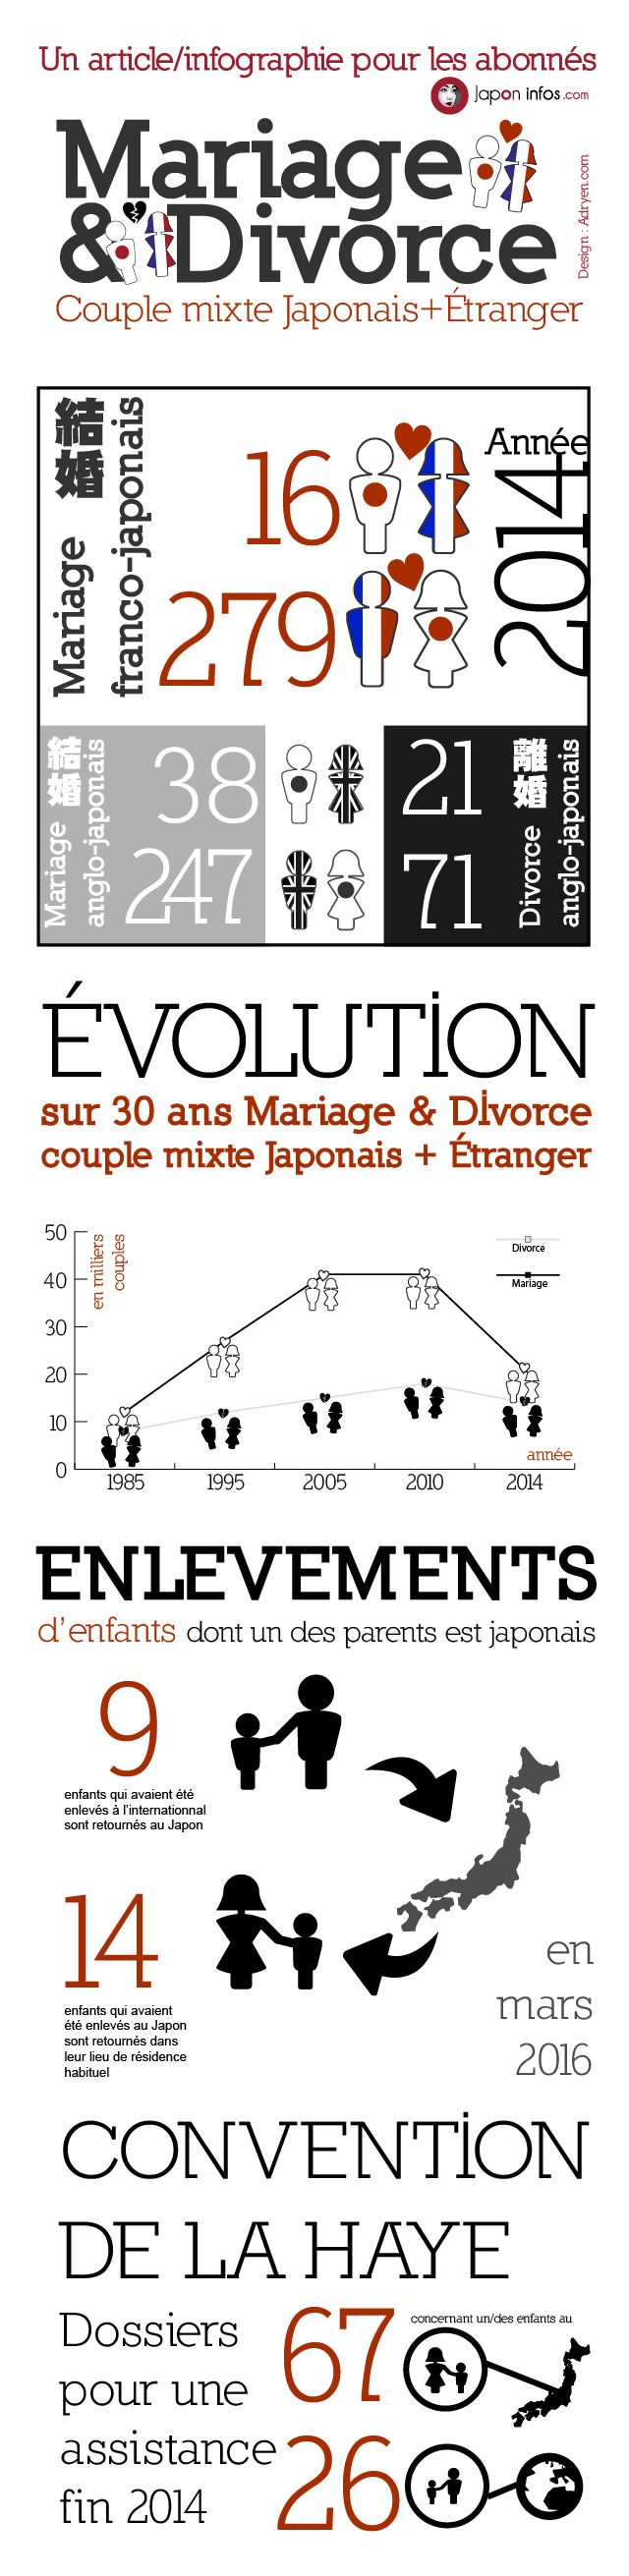 mariage-divorce-japonaise-japon-japonais-france-etrangers-01